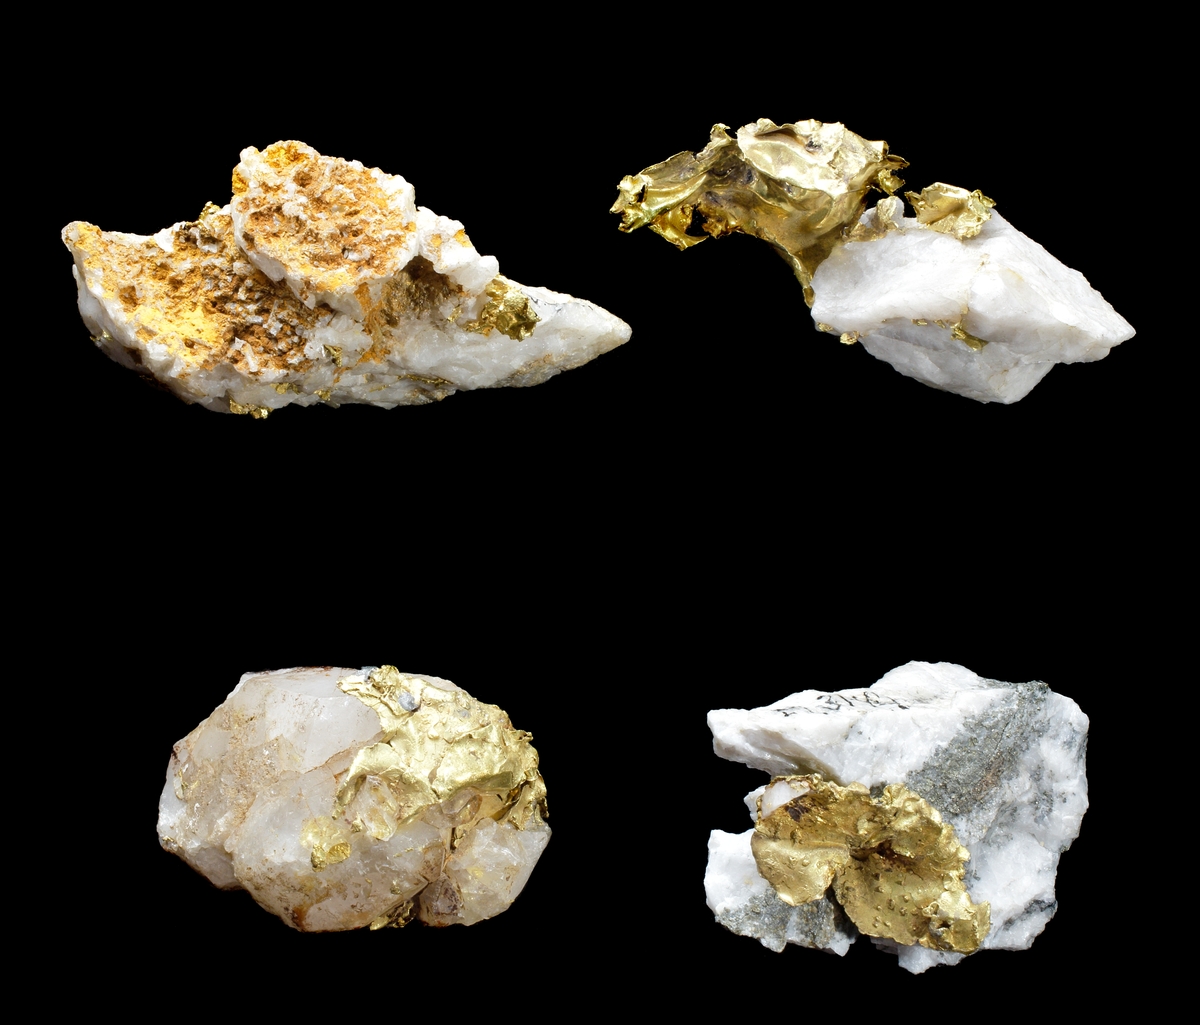 Guldstuff (stuffer kallas stycken av mineral eller bergart avsedda för studium) bestående av vit kvarts och nativt guld i form av blad, korn och i utstickande bleckform.
Operasångerskan Christina Nilsson förärades 4 st guldstuffer (M 3141-M 3144) i april 1871 under en resa till Kalifornien, USA. De kommer från gruvbolagen The Amador Co och El Dorado Co. Berörda gruvchefer gav bort något av det bästa man kunde visa upp. De utgjorde samtliga prover på ursprungligt guld som gjort Kalifornien känt över en stor del av världen (Svensk numismatisk tidskrift nr 4, maj 2008, s. 88).

Inskrivet i huvudkatalog 1909.